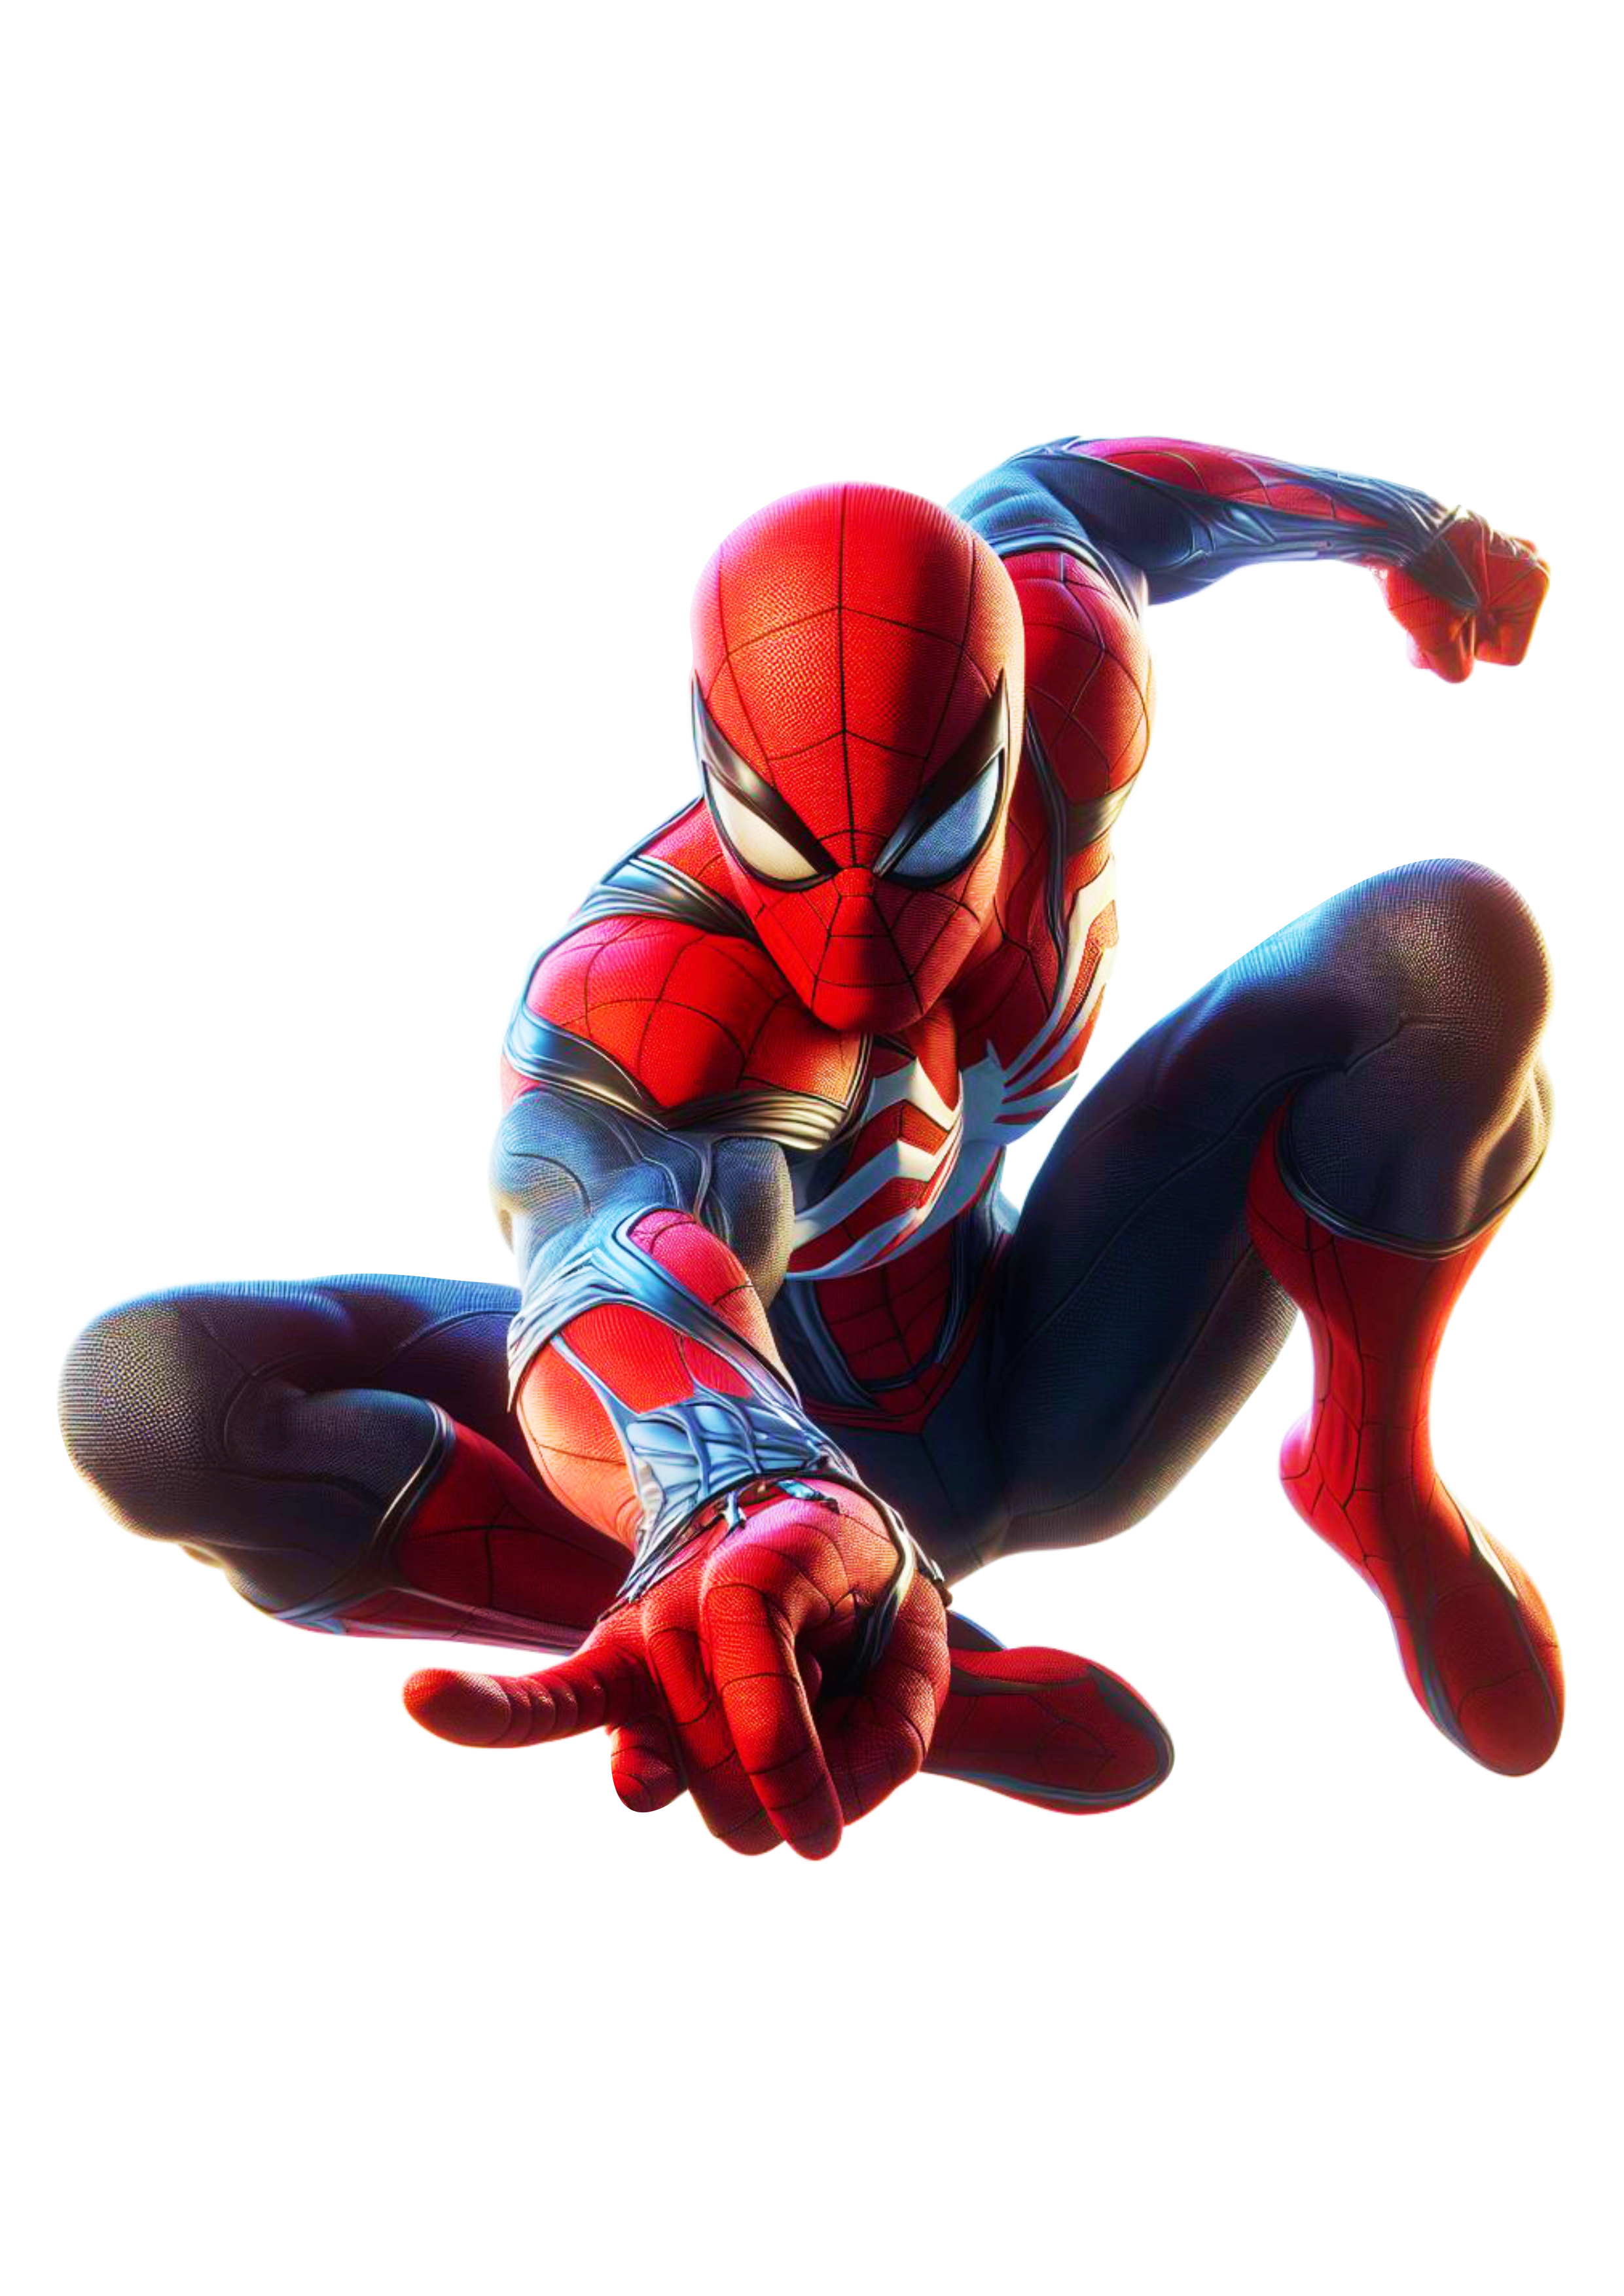 O espetacular Homem-Aranha personagem de quadrinhos e games fundo transparente png